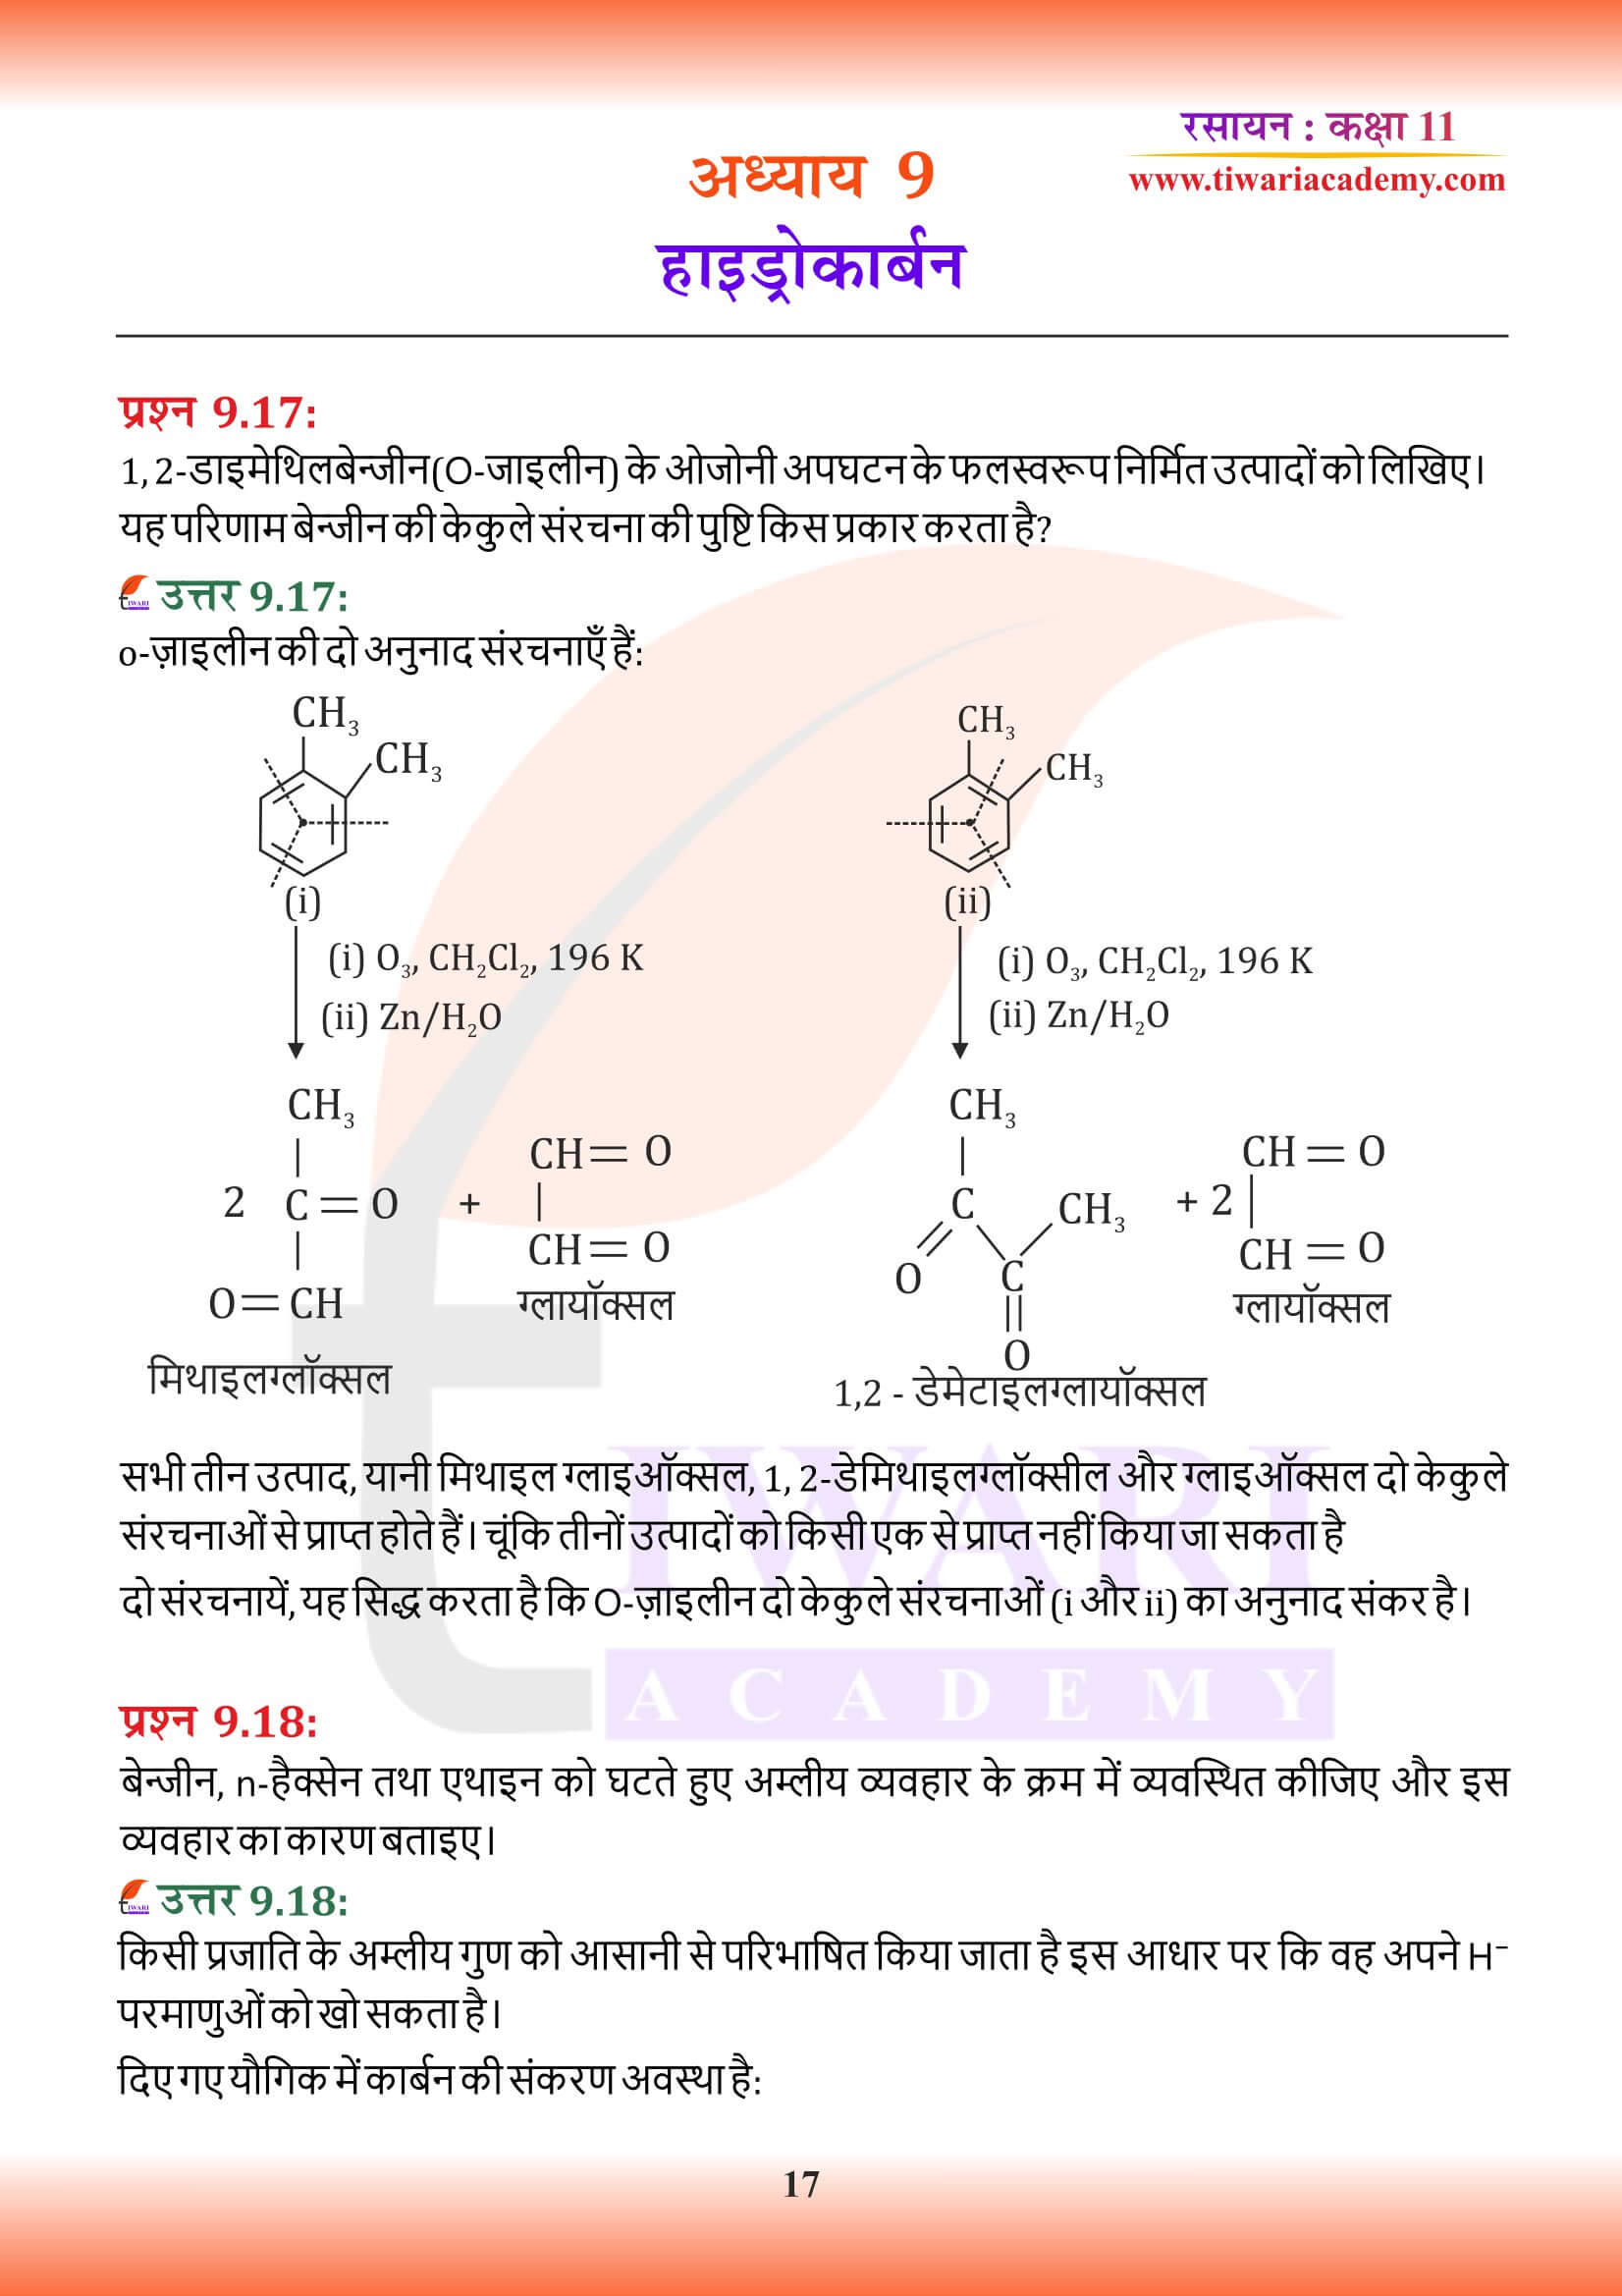 कक्षा 11 रसायन अध्याय 9 हिंदी मीडियम में